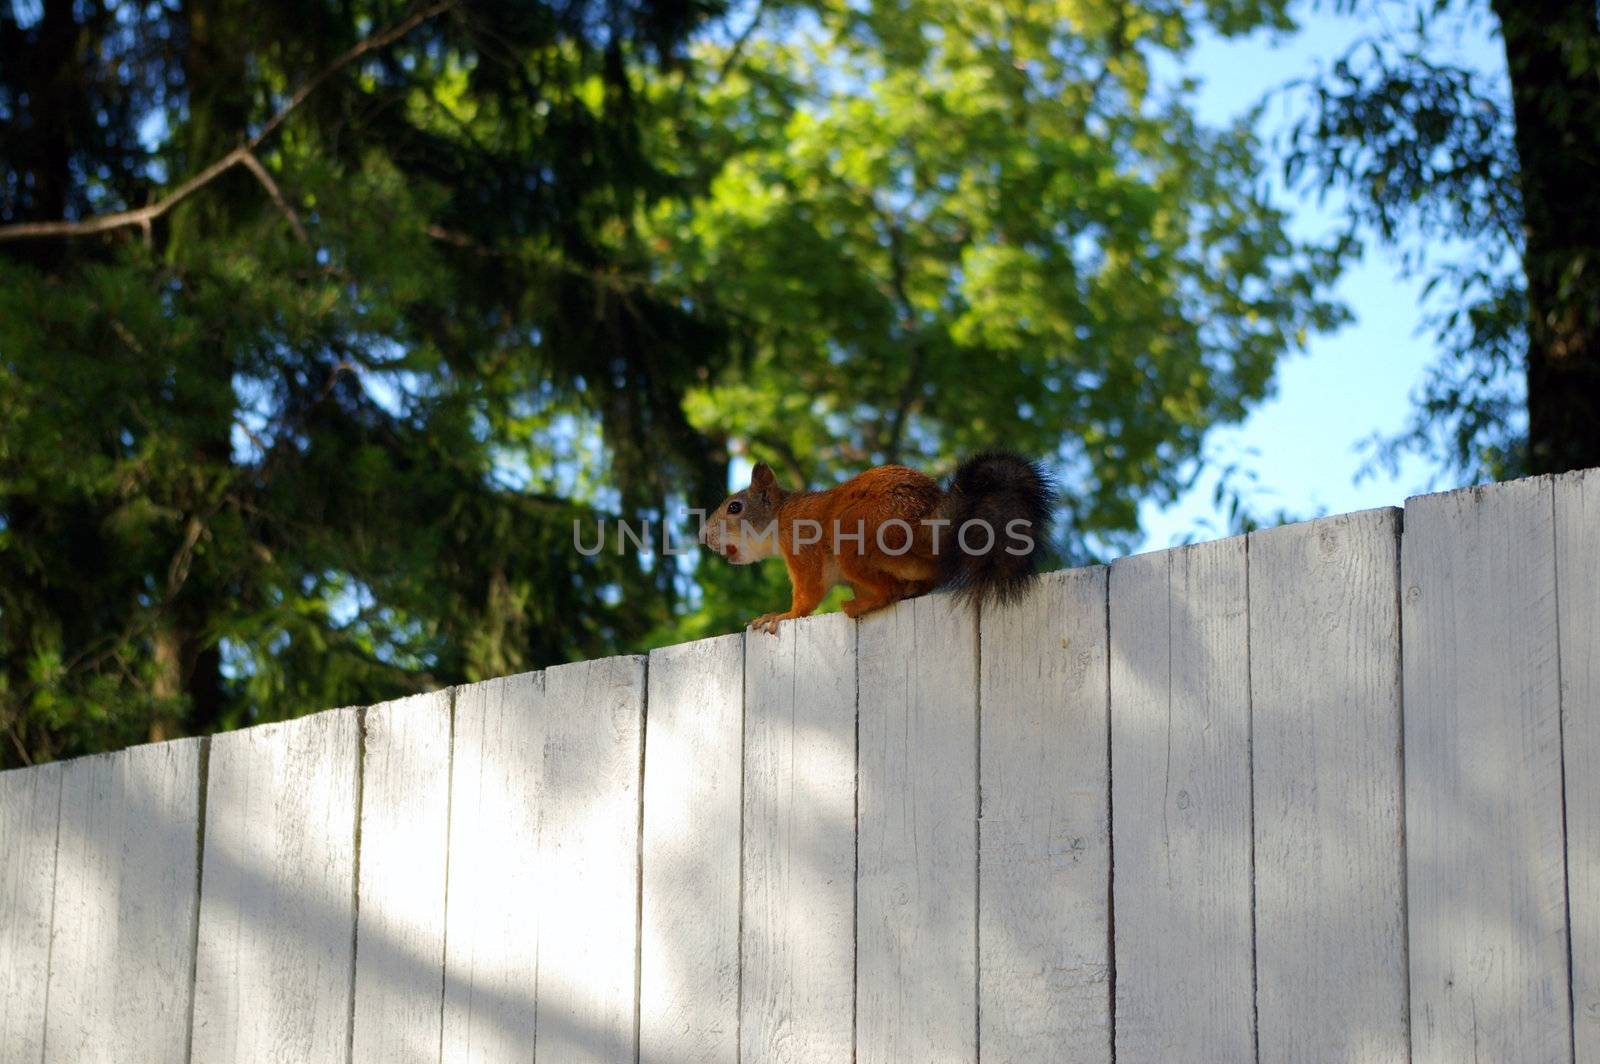 squirrel on a fence  by Dmitrymik